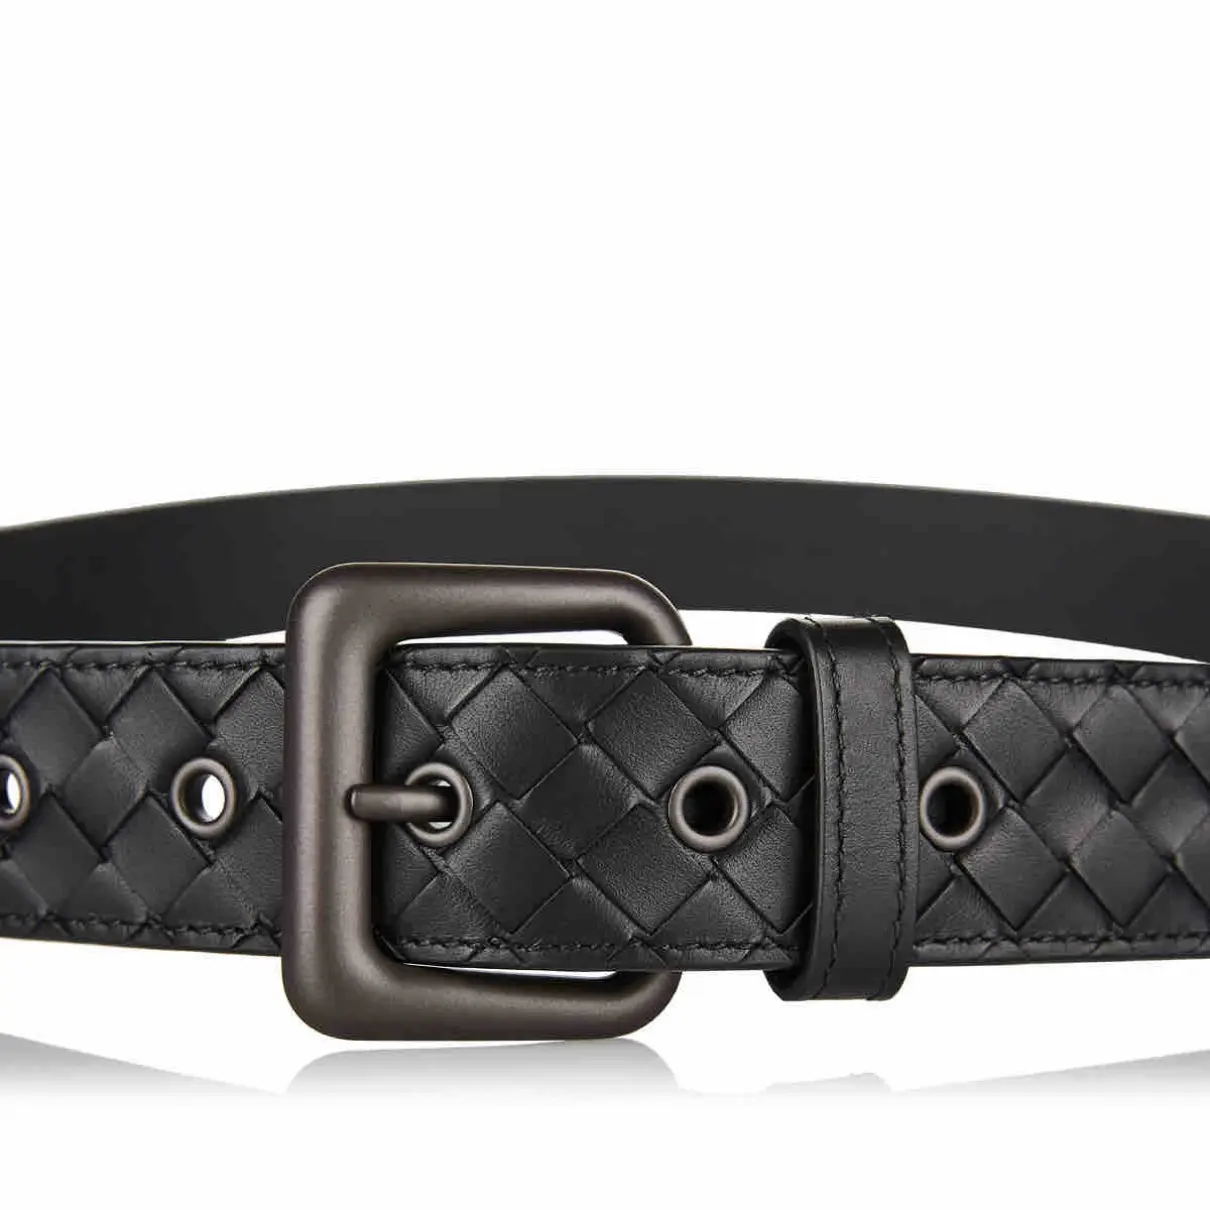 Buy Bottega Veneta Leather belt online